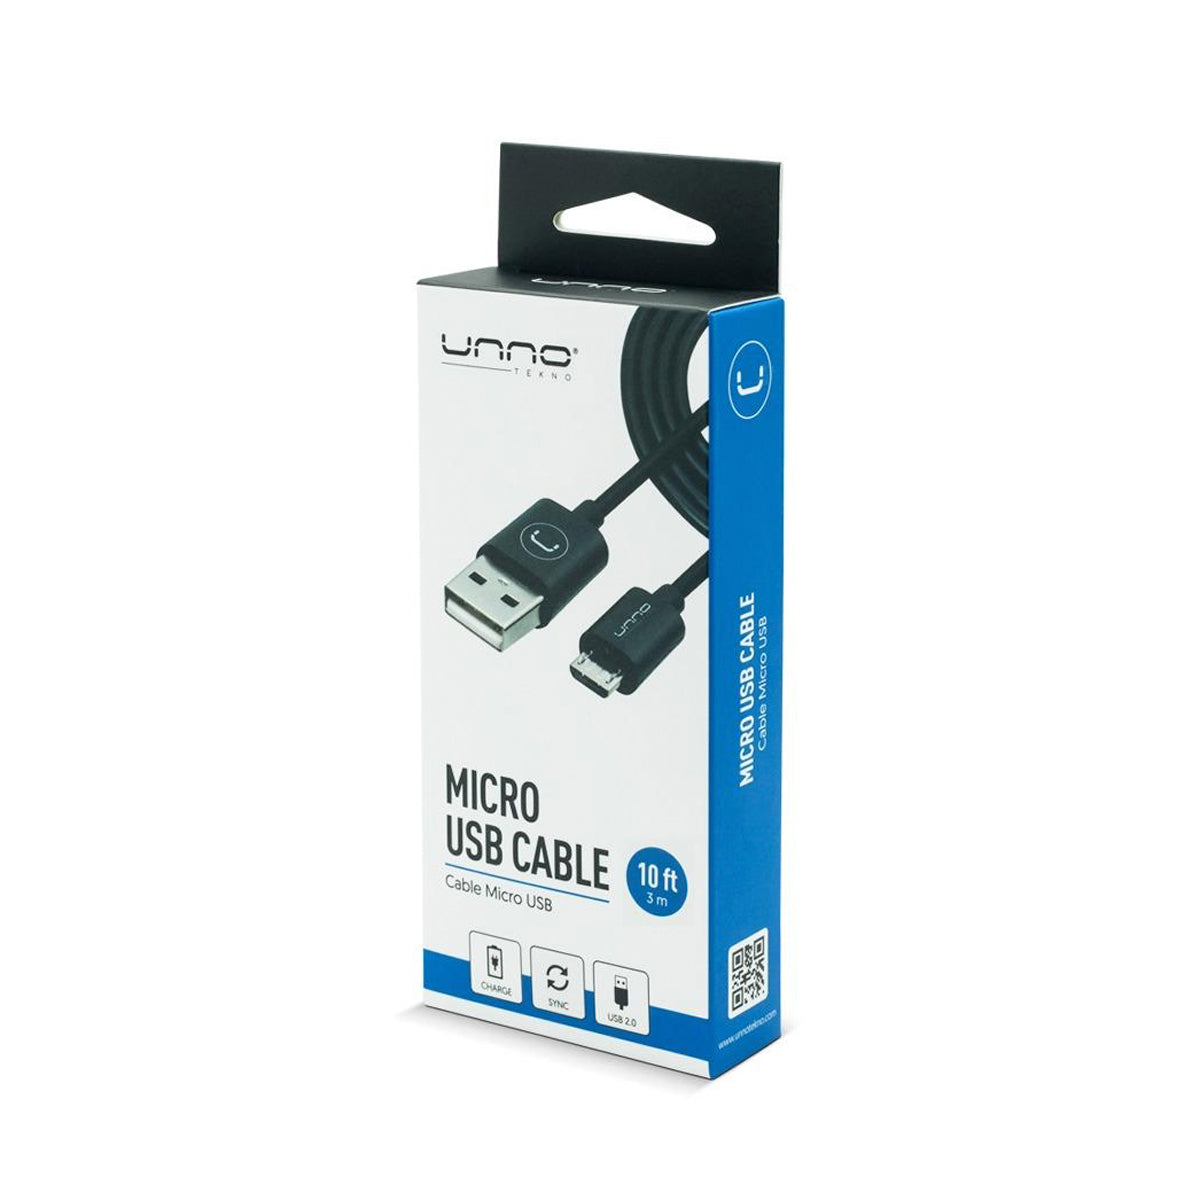 Cable Micro-USB 2.0 3M Unno